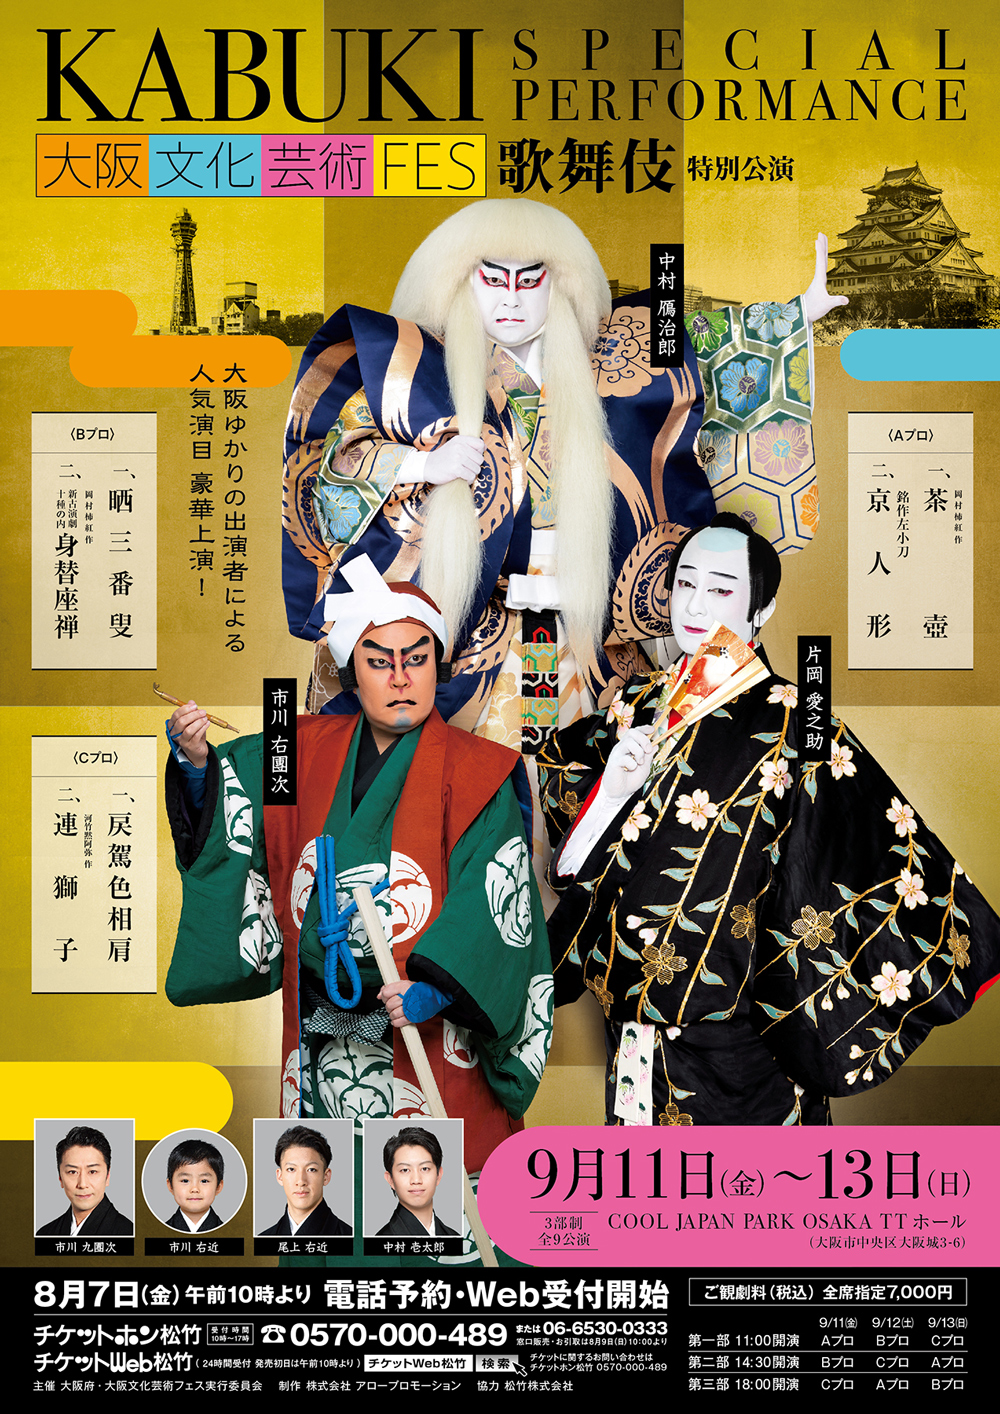 ★鴈治郎、愛之助、右團次ら出演、「大阪文化芸術フェス2020」のお知らせ